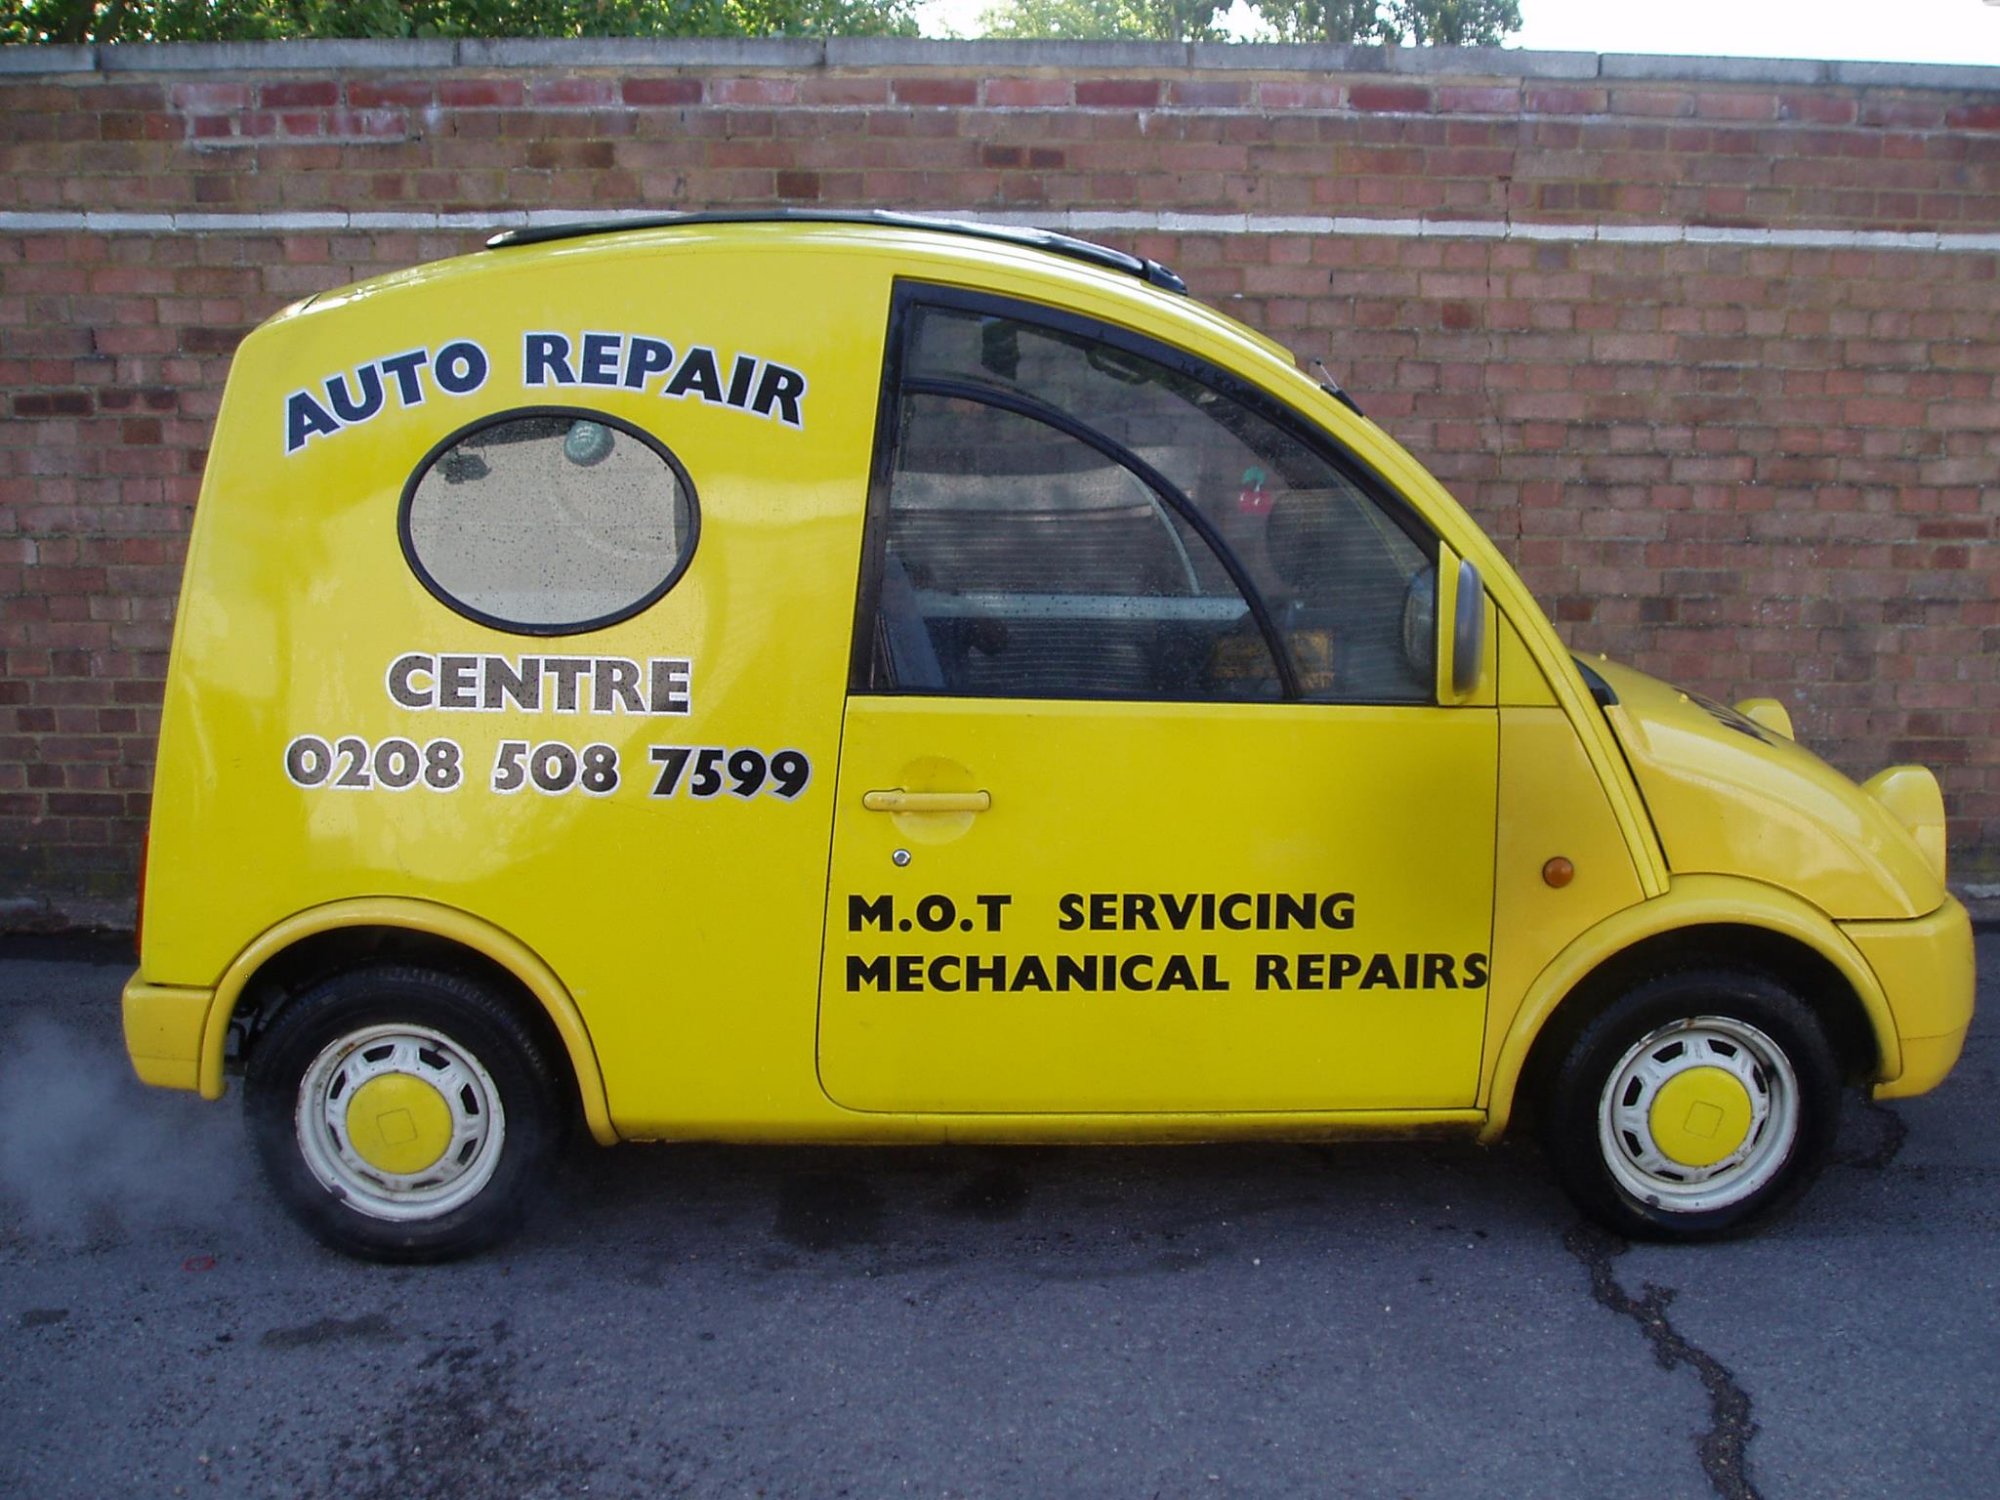 Auto Repair Centre Loughton